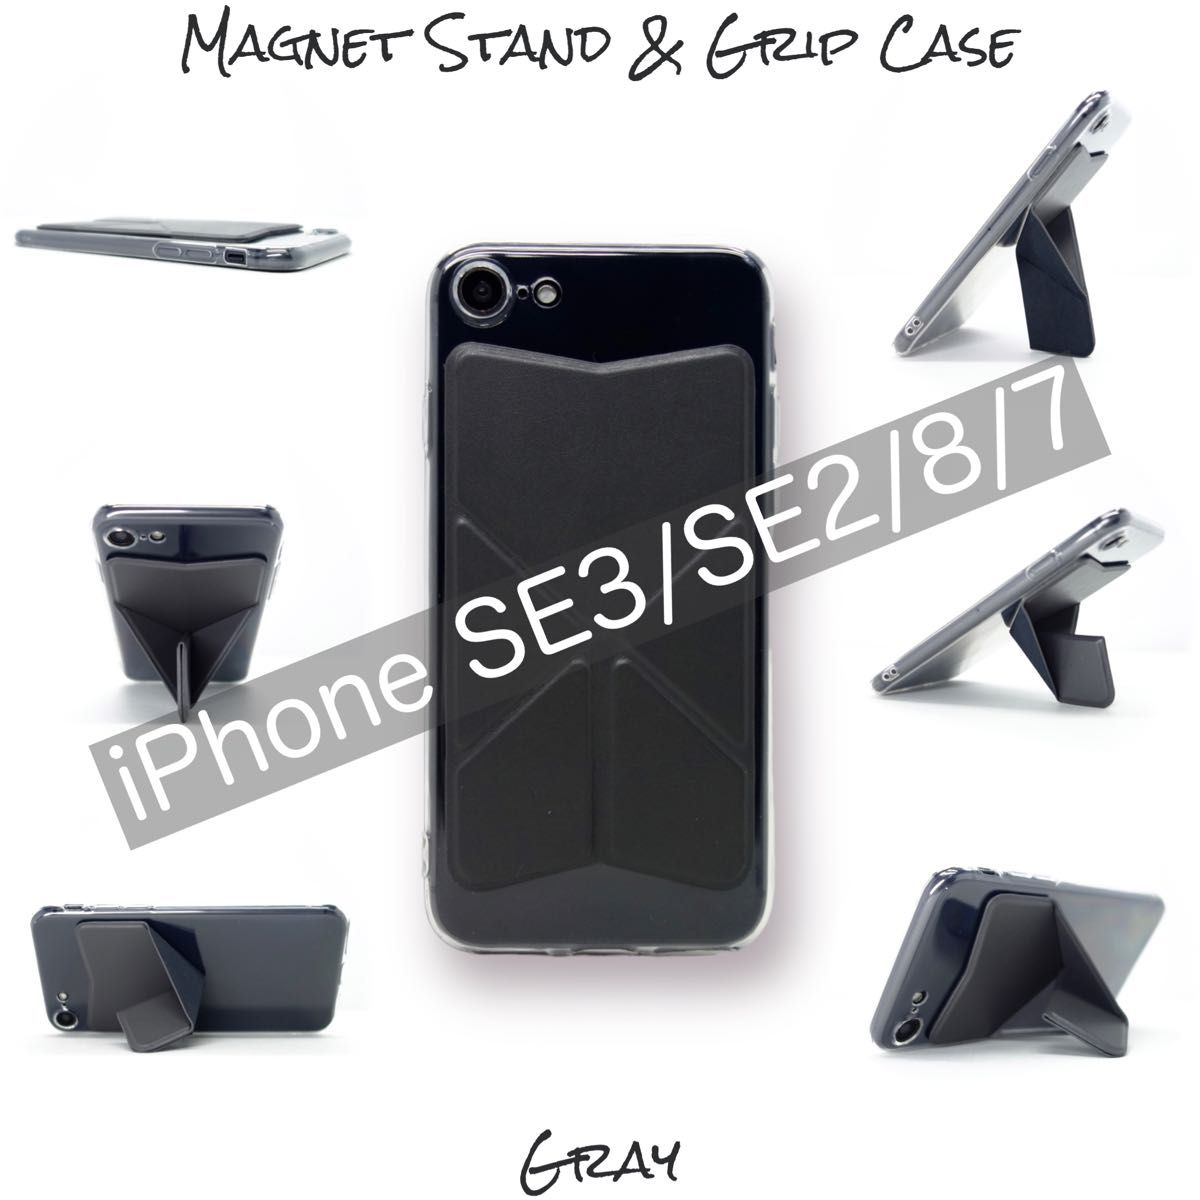 iPhone SE3 SE2 8 7 ケース スマホスタンド スマホグリップ マグネット内蔵 ワイヤレス充電OK グレー